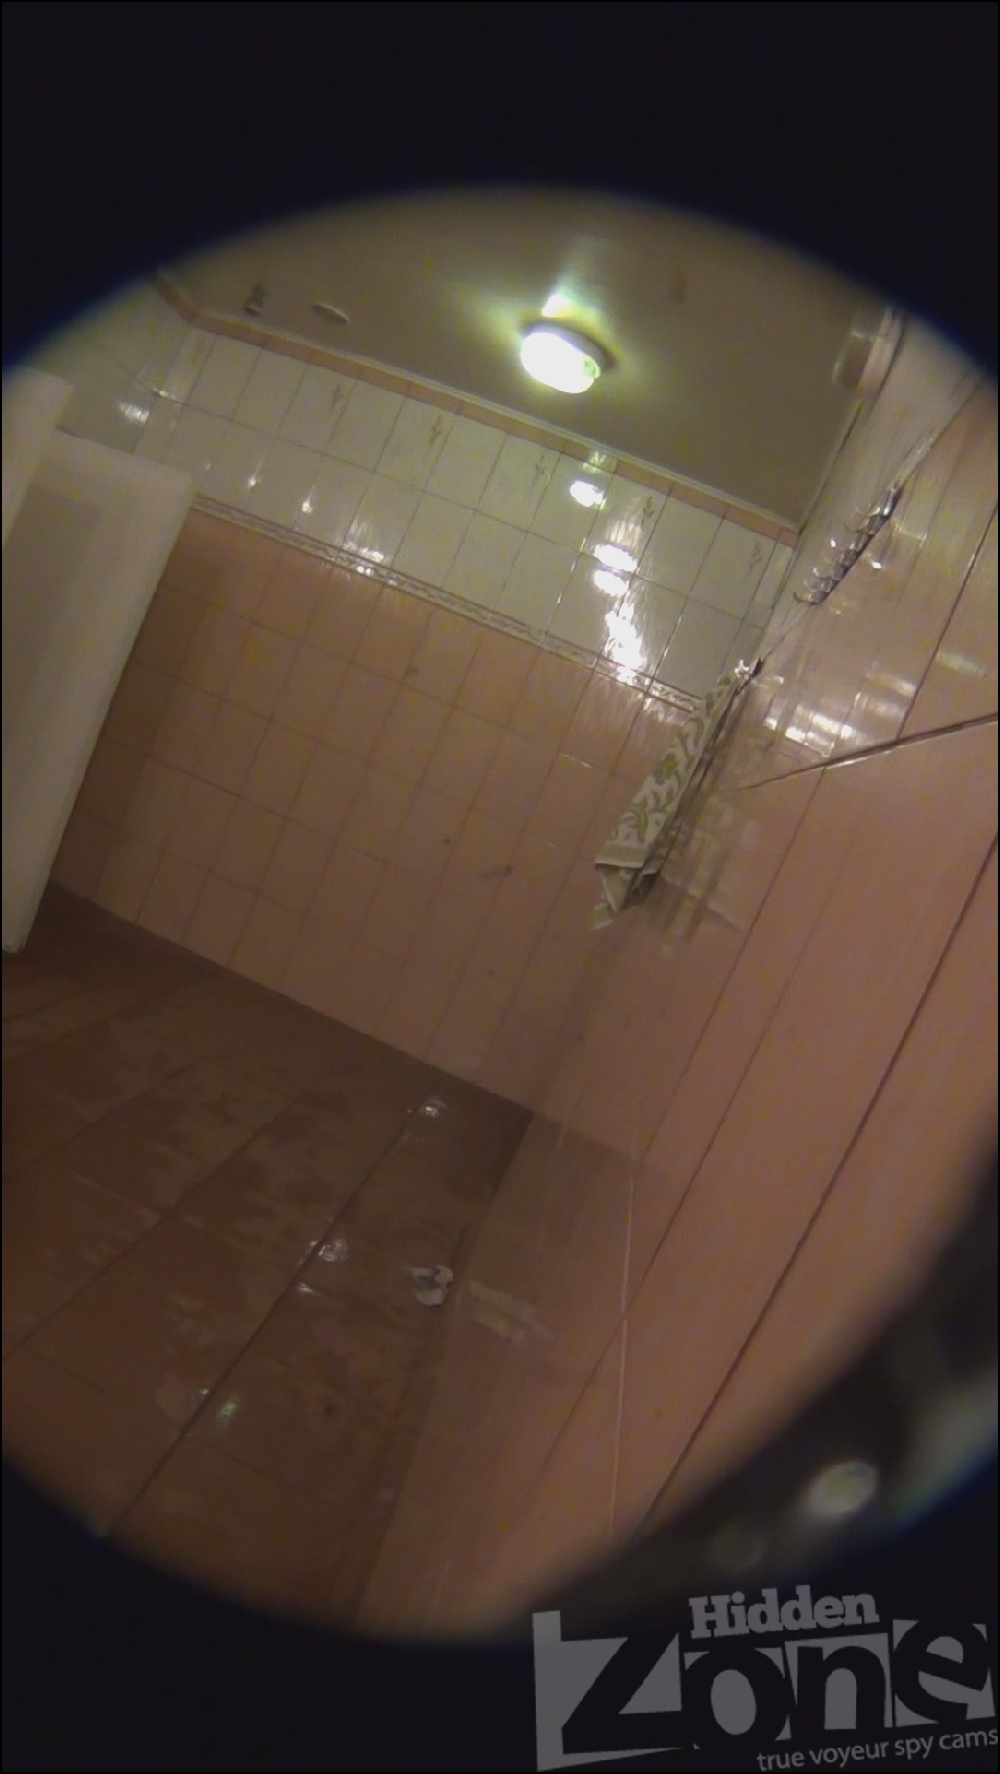 В женской бане ведут съемки скрытой камерой